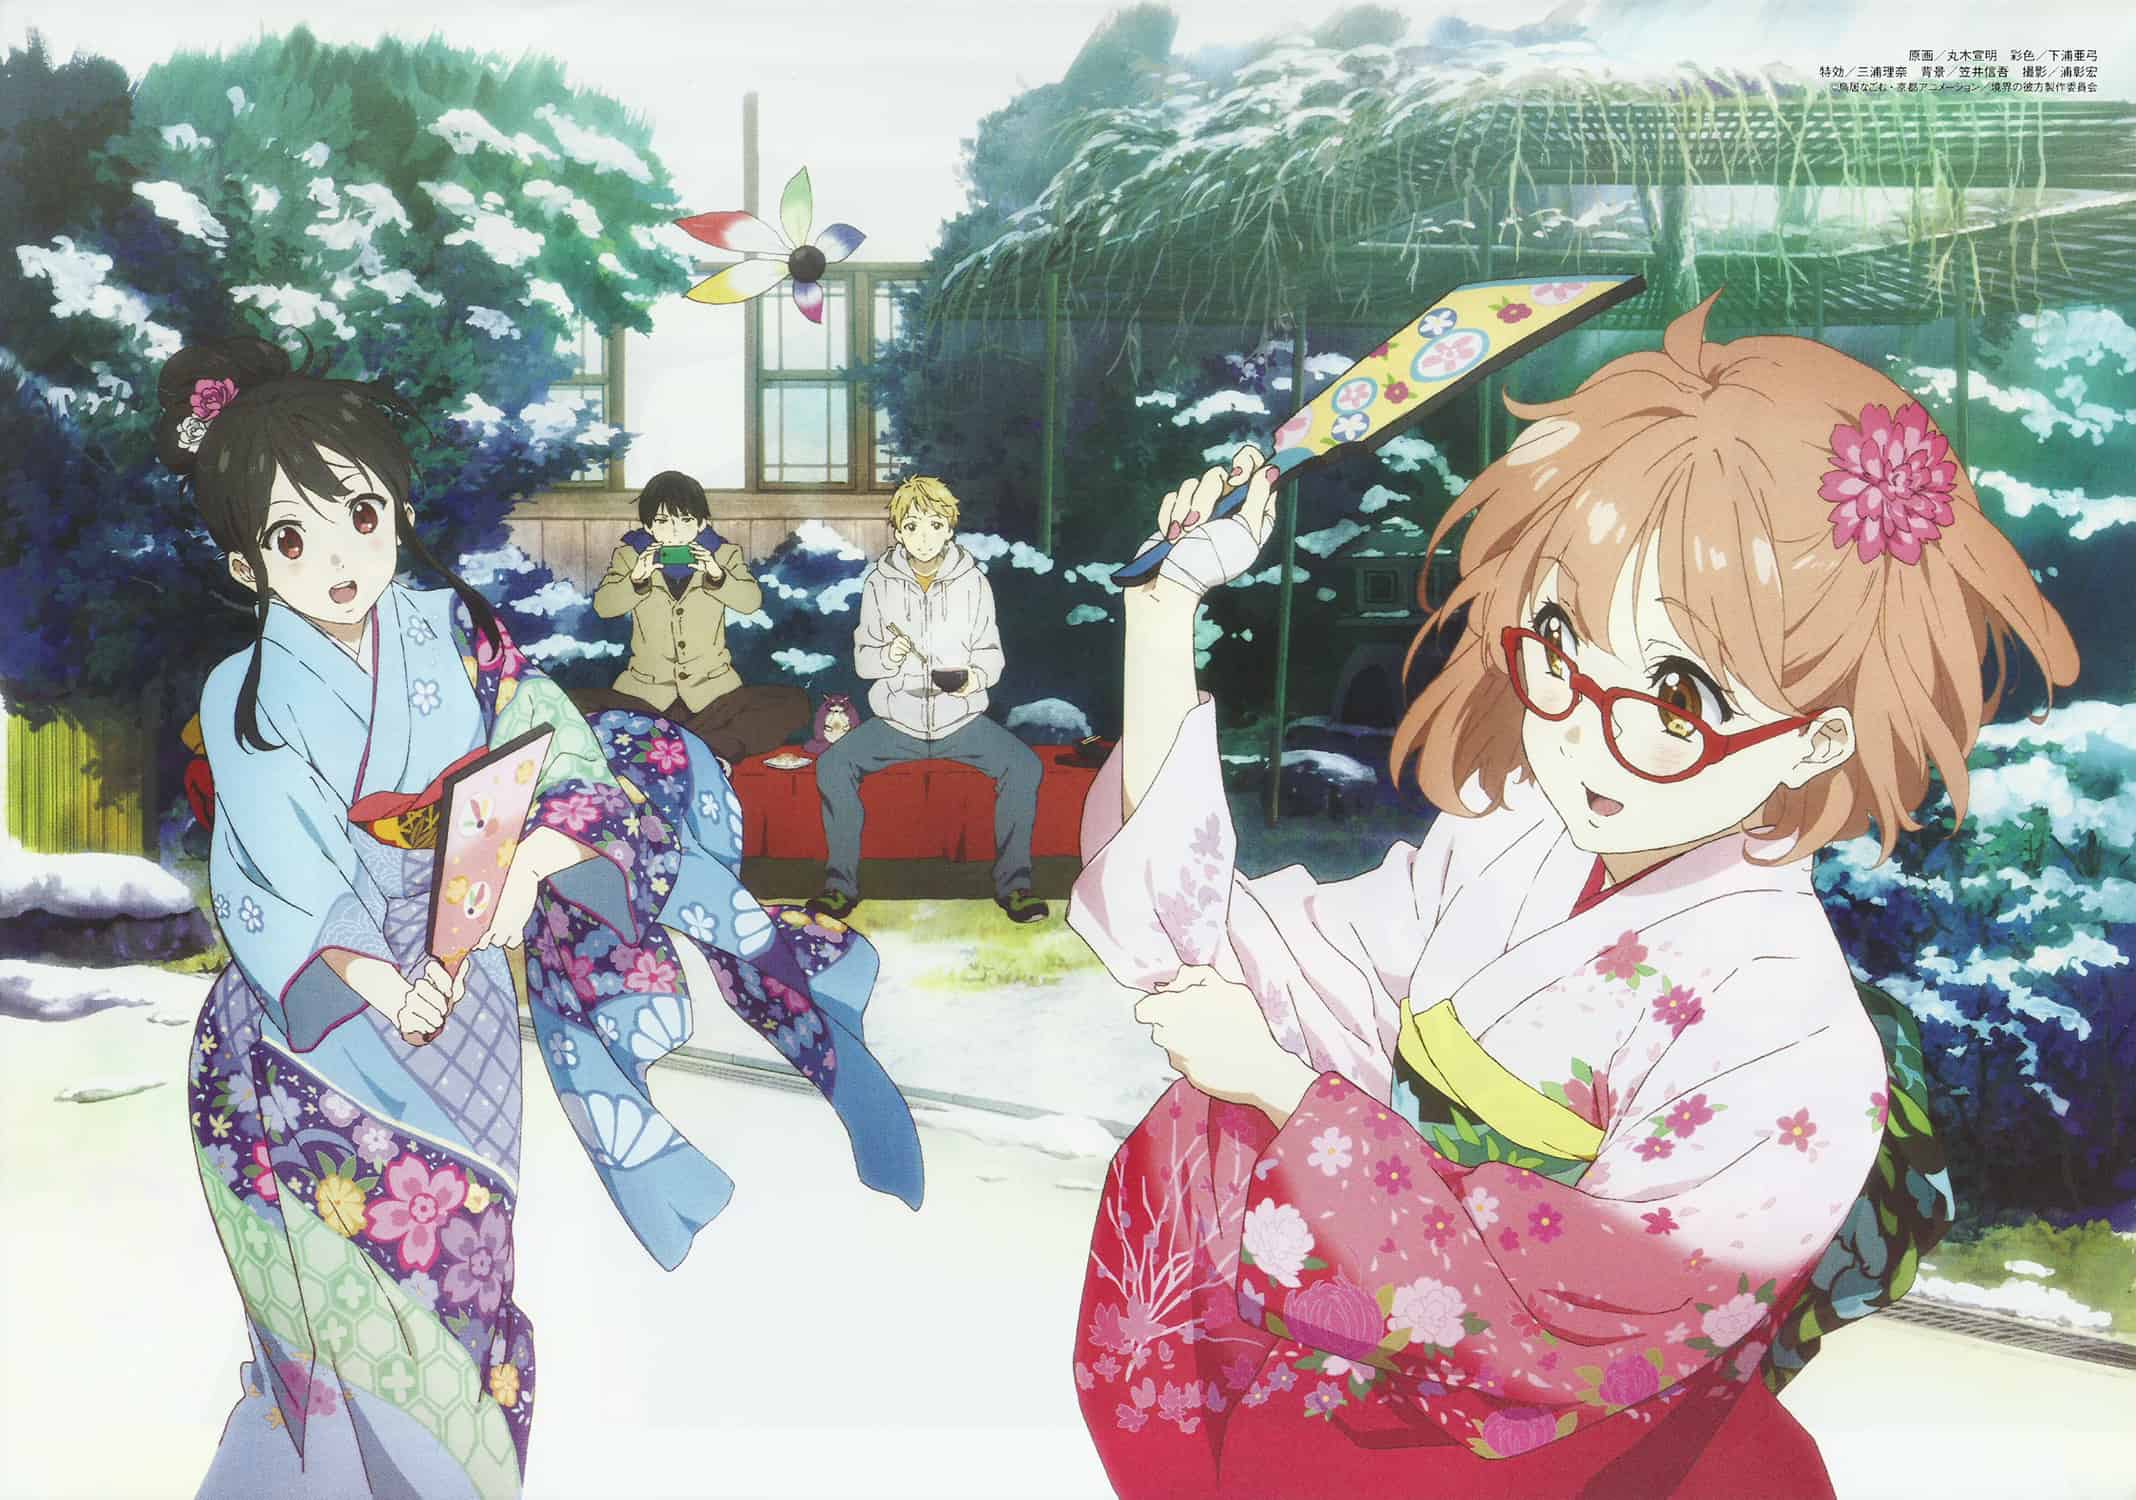 Spoilers] Kyoukai no Kanata Rewatch - Series Discussion : r/anime